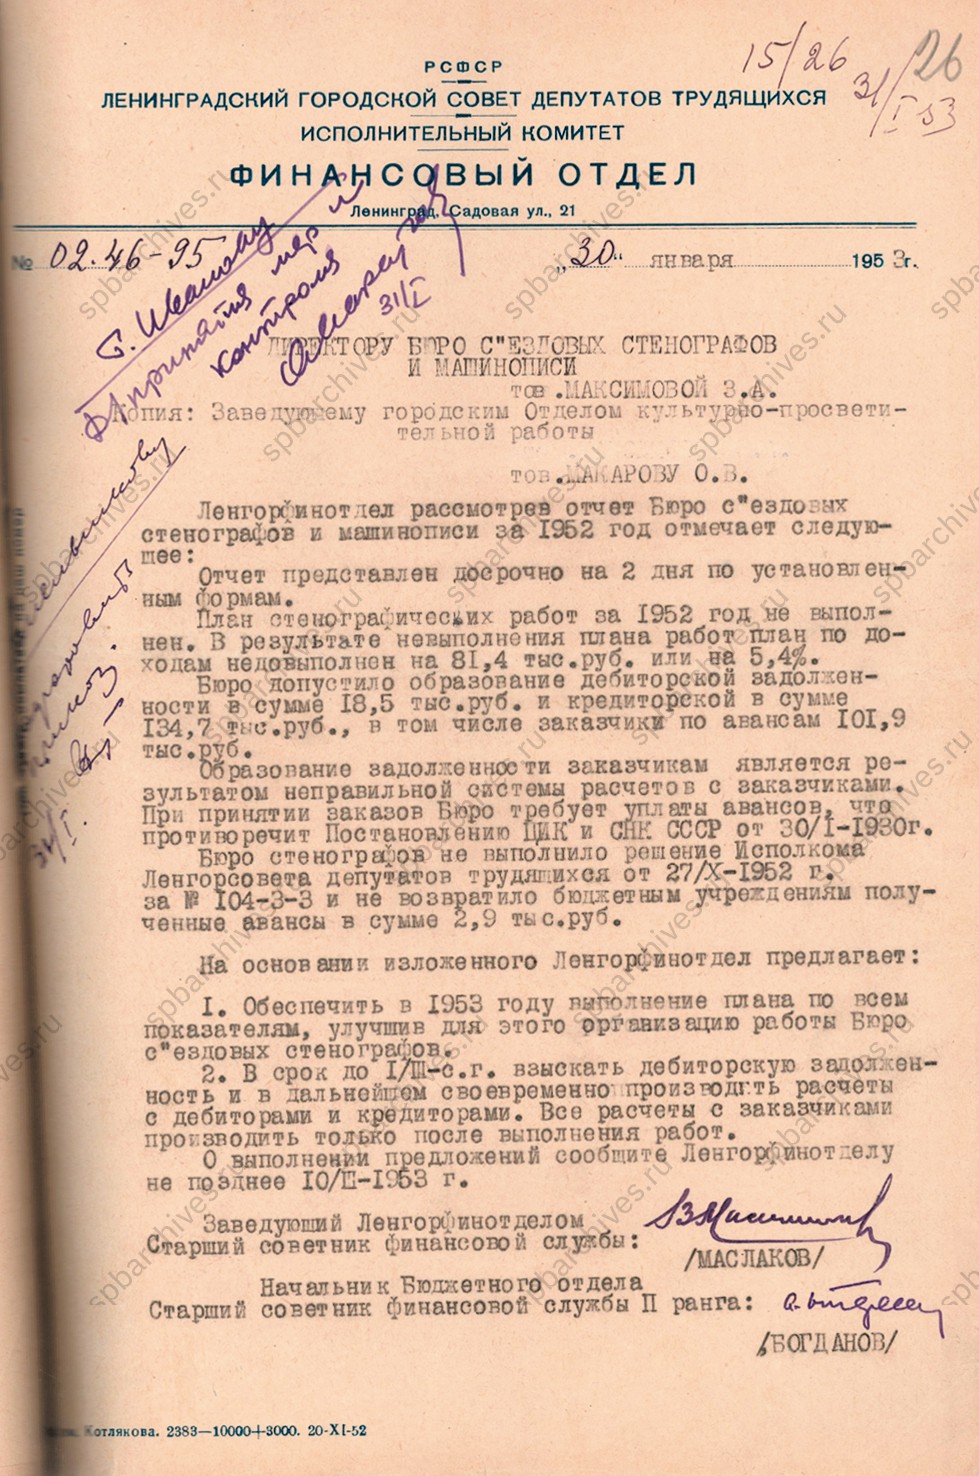 Заключение Ленгорфинотдела по отчёту Бюро съездовых стенографов и машинописи за 1952 г.<br />
30 января 1953 г.<br />
<em>ЦГАЛИ СПб. Ф.Р-277. Оп.1. Д.1529. Л.26.</em>